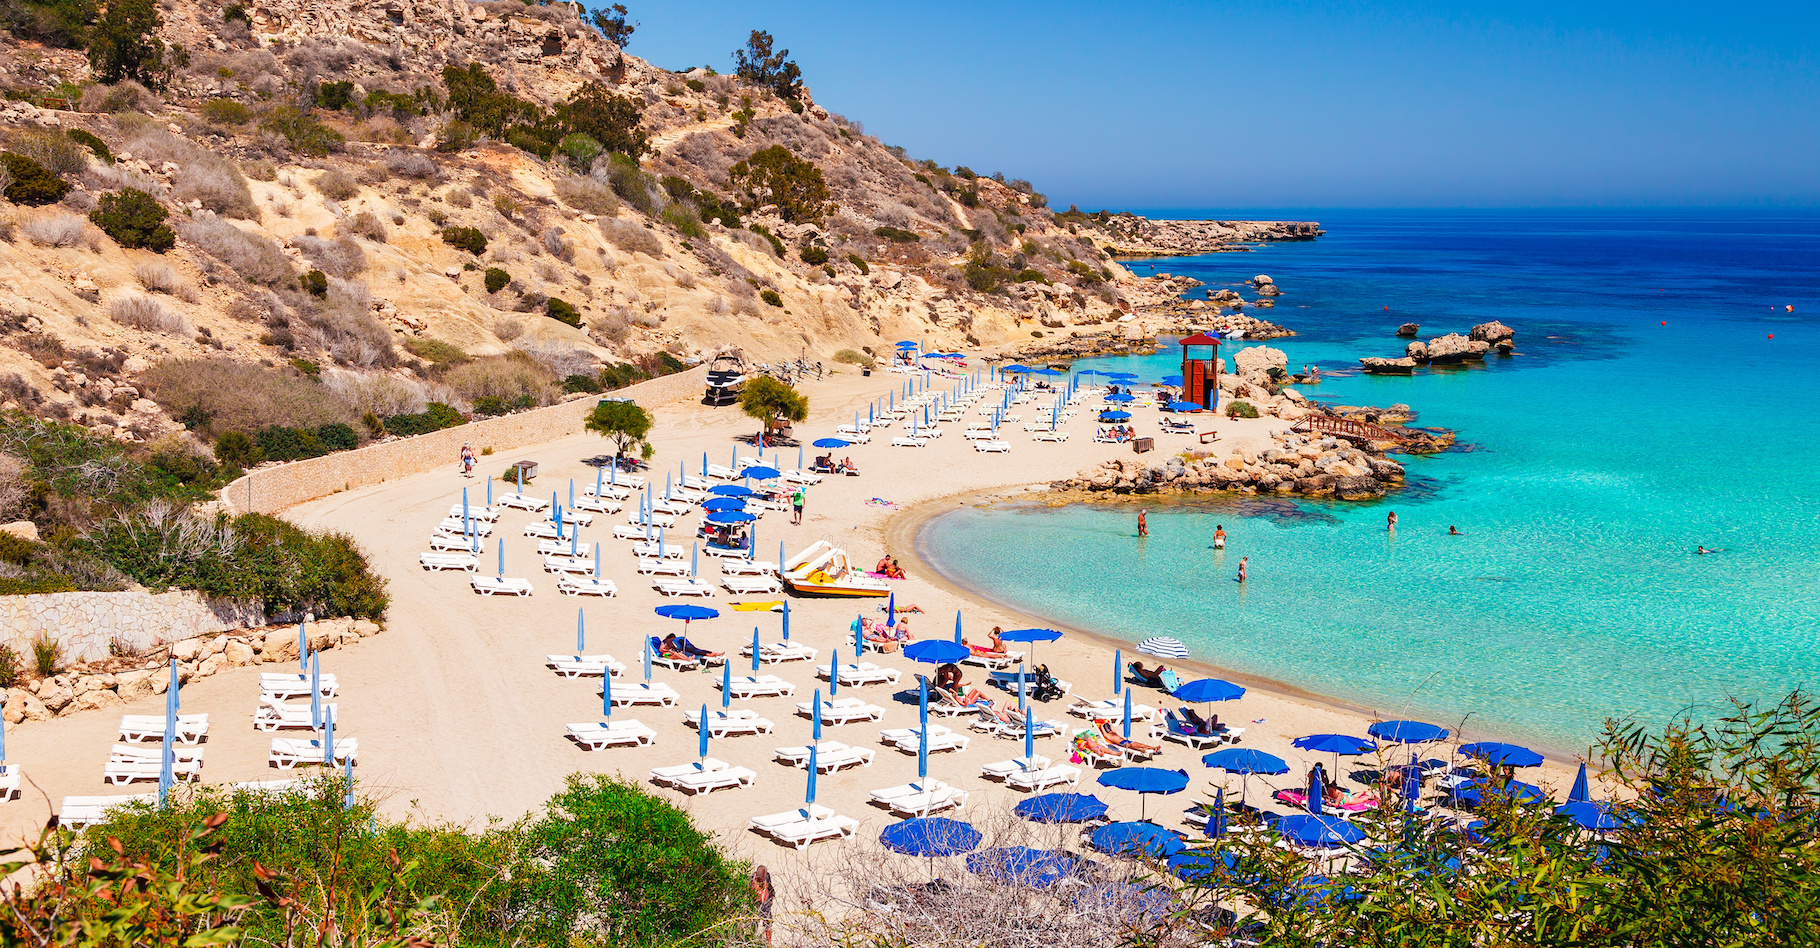 Des chercheurs de l’université de l’Égée (Grèce) montrent qu’avec le changement climatique, les plages de Chypre vont souffrir de la montée du niveau de la mer et de l’intensification des tempêtes. © oleg_p_100, Adobe Stock